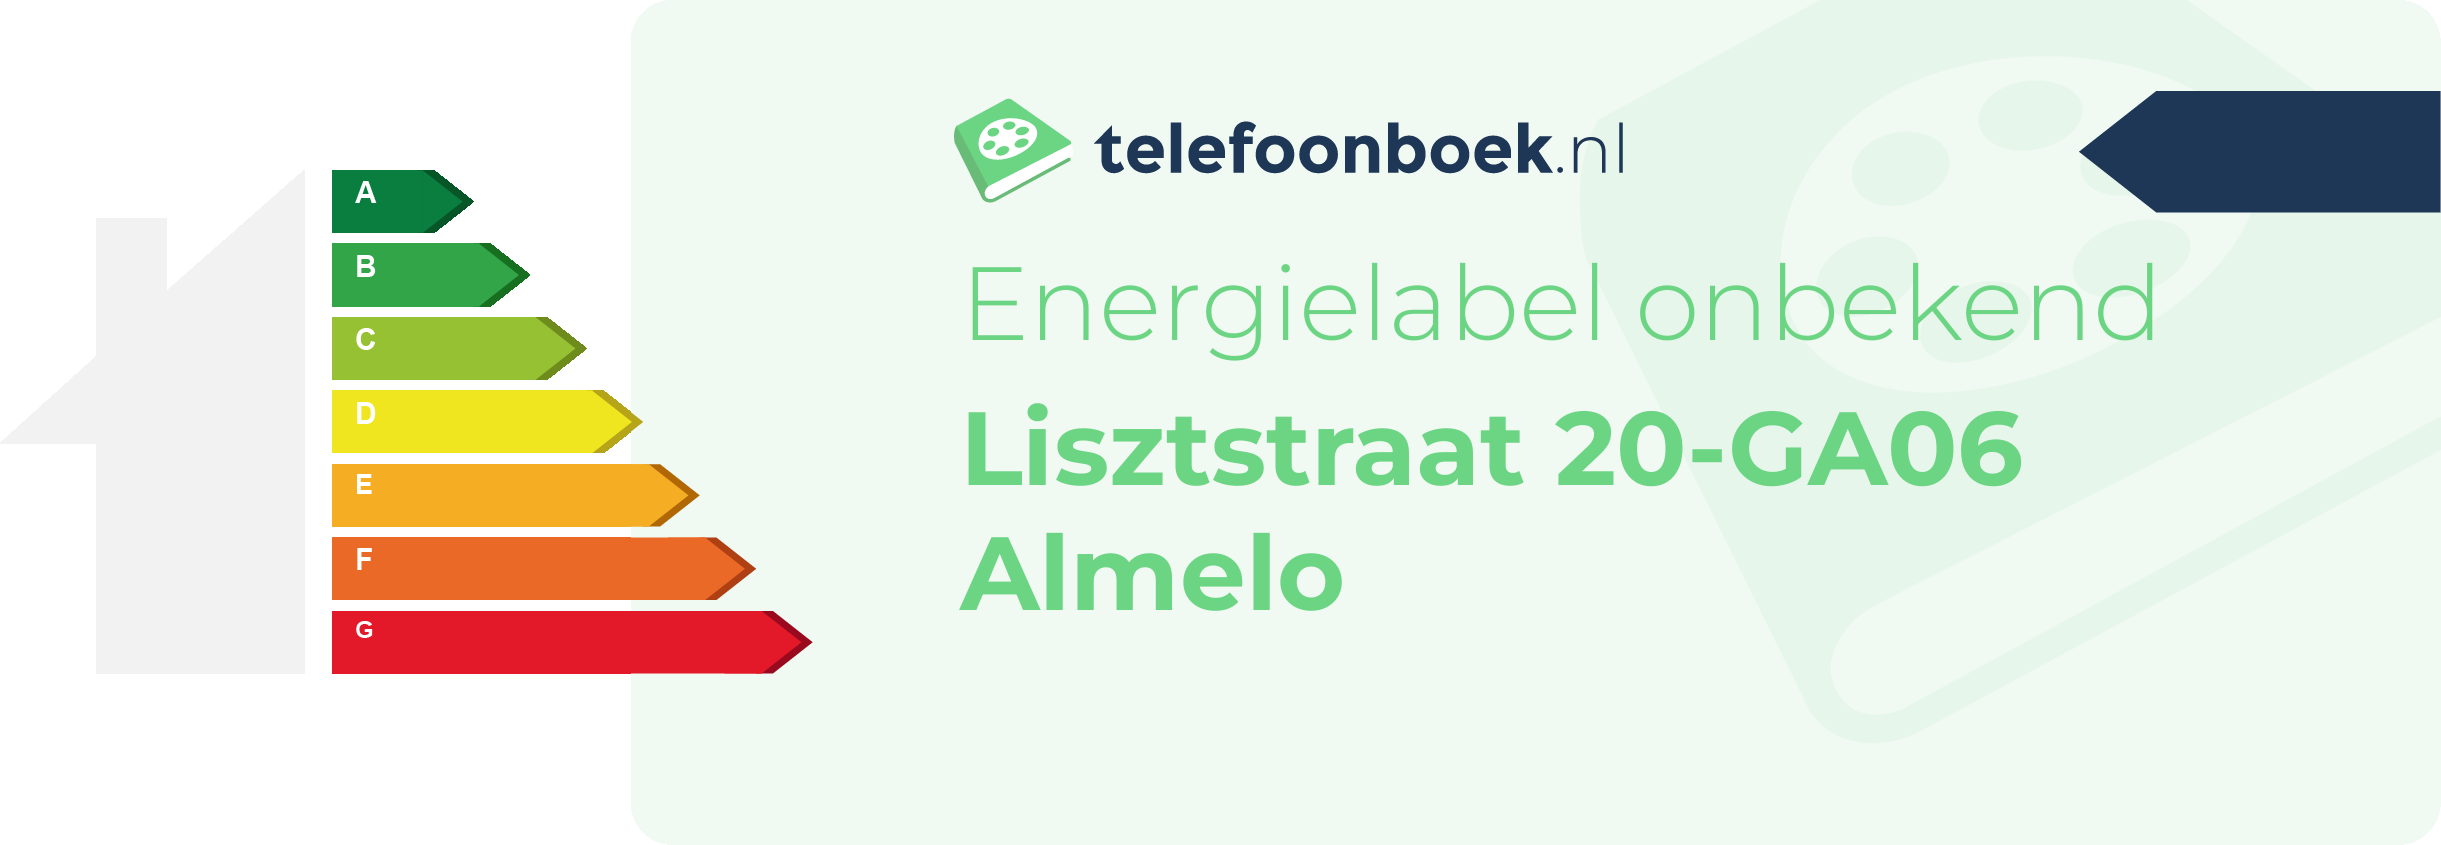 Energielabel Lisztstraat 20-GA06 Almelo